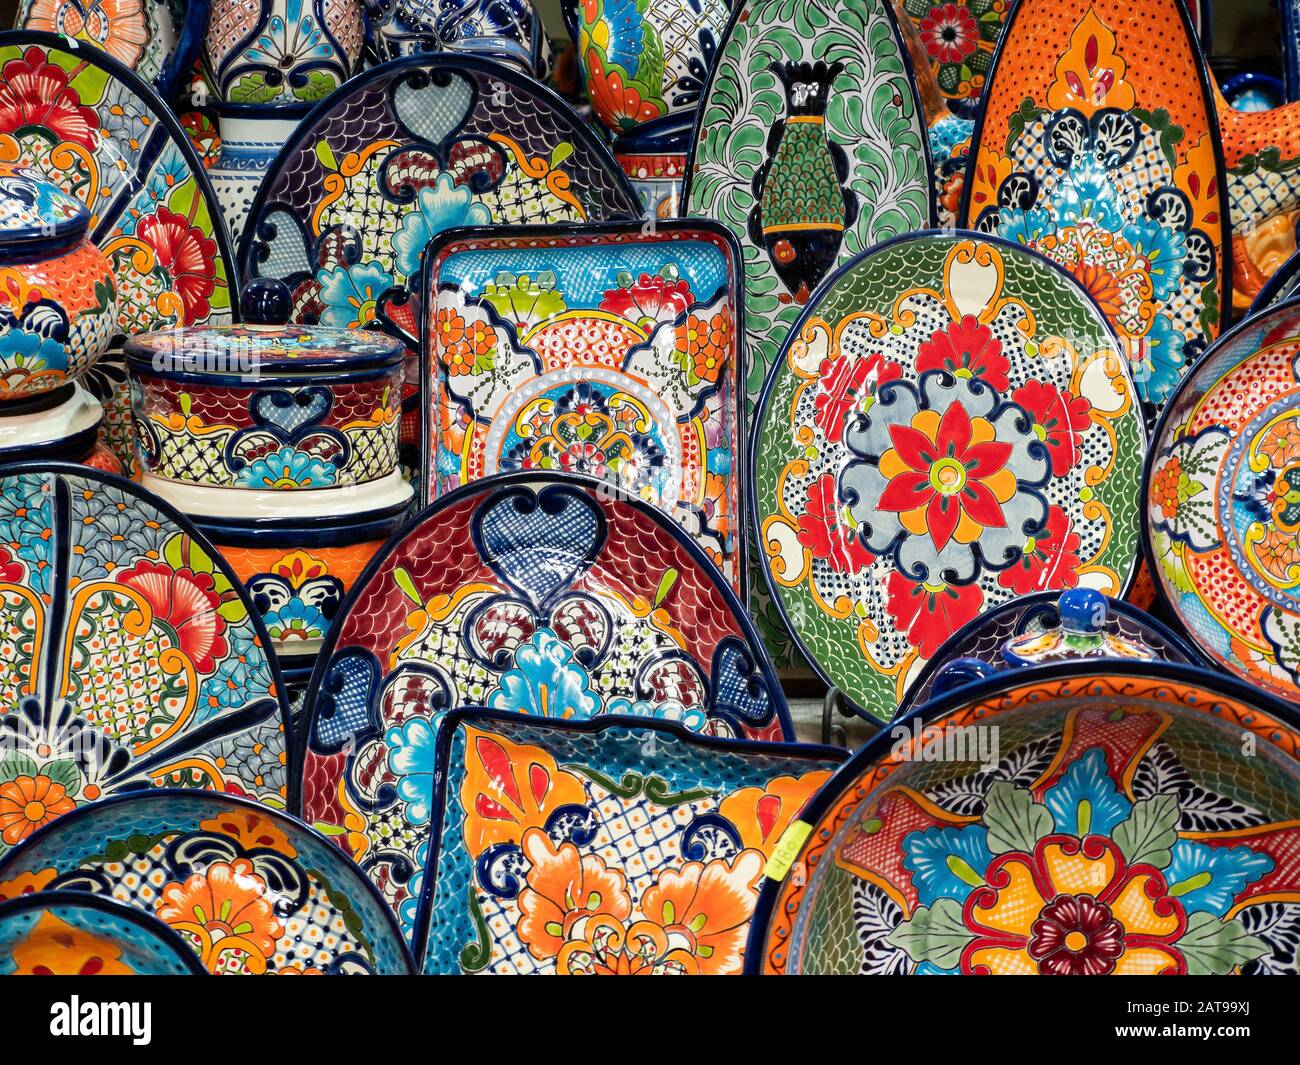 Farbenfrohe Keramik auf dem Straßenmarkt und Souvenirladen in San Miguel de Allende, Guanajuato, Mexiko. Stockfoto